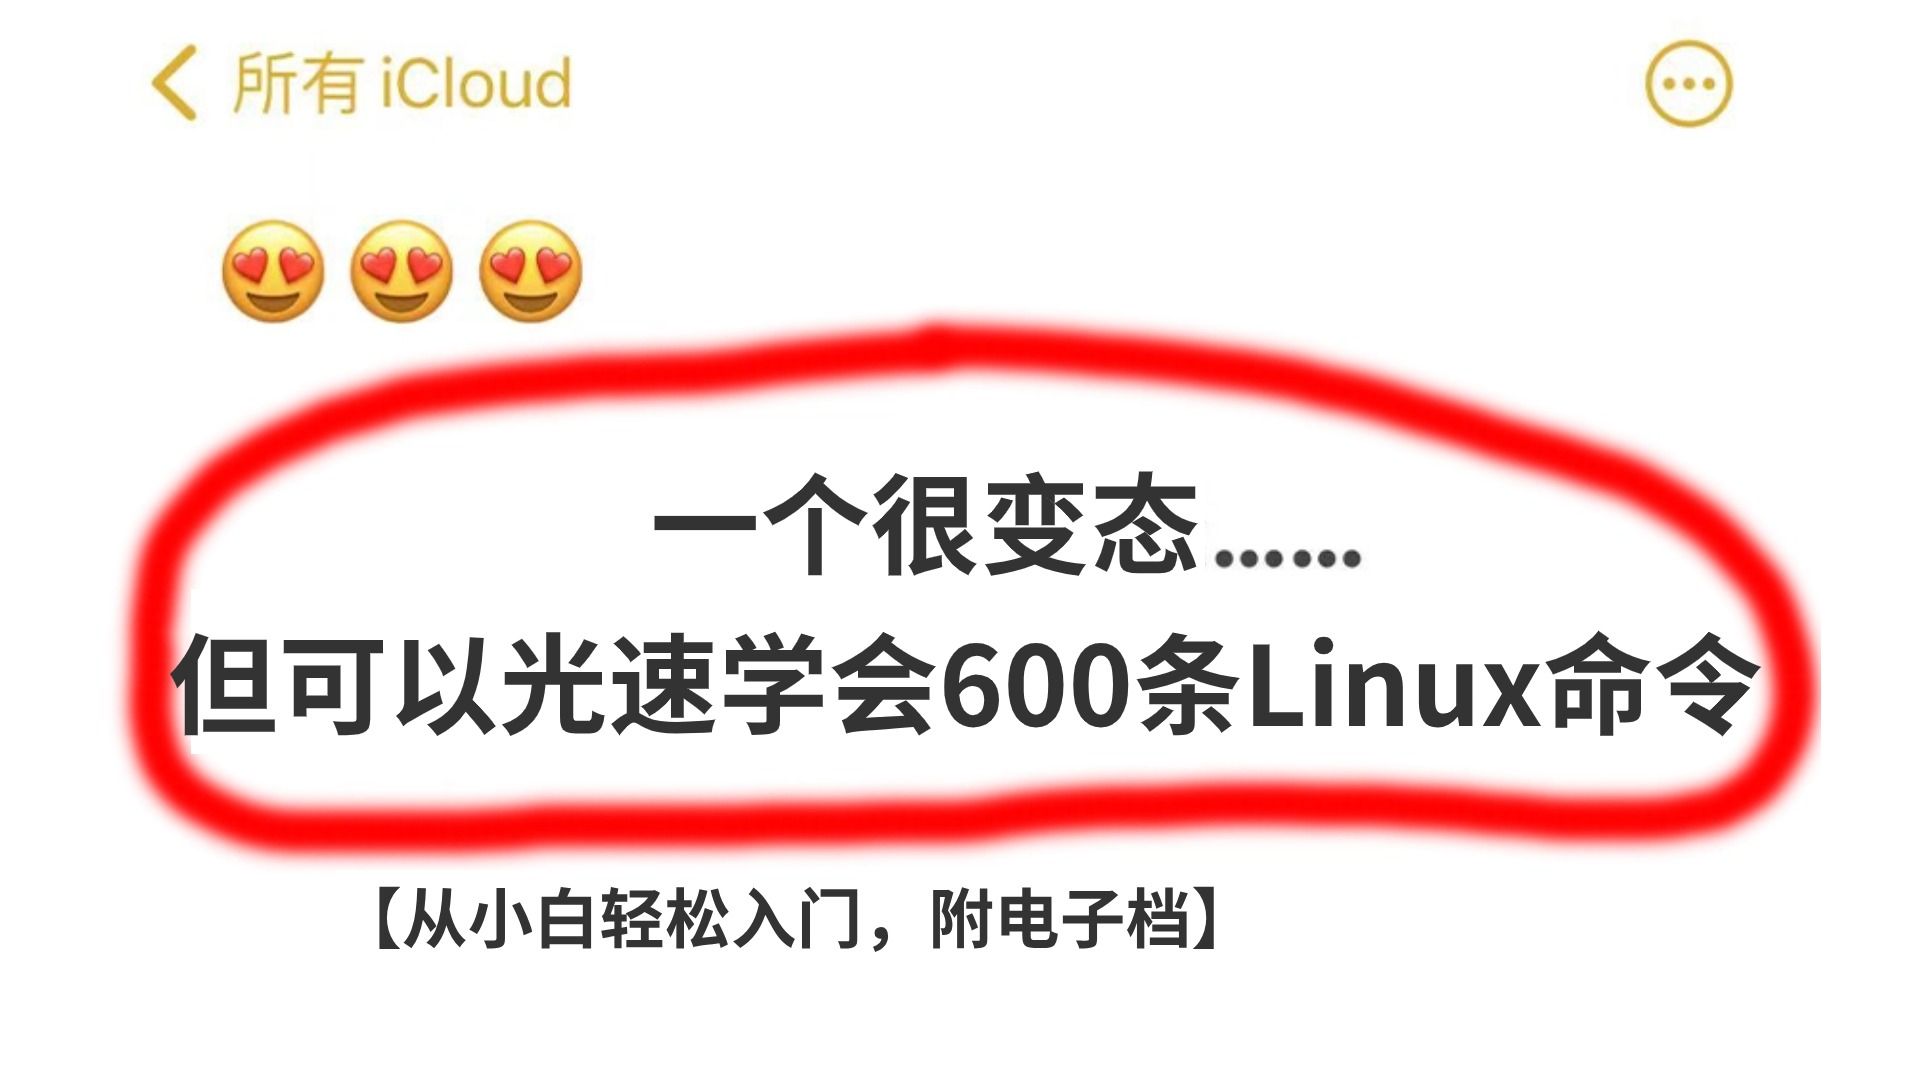 能用到退休的600条Linux常用命令，助你解决99%的问题，附文档！